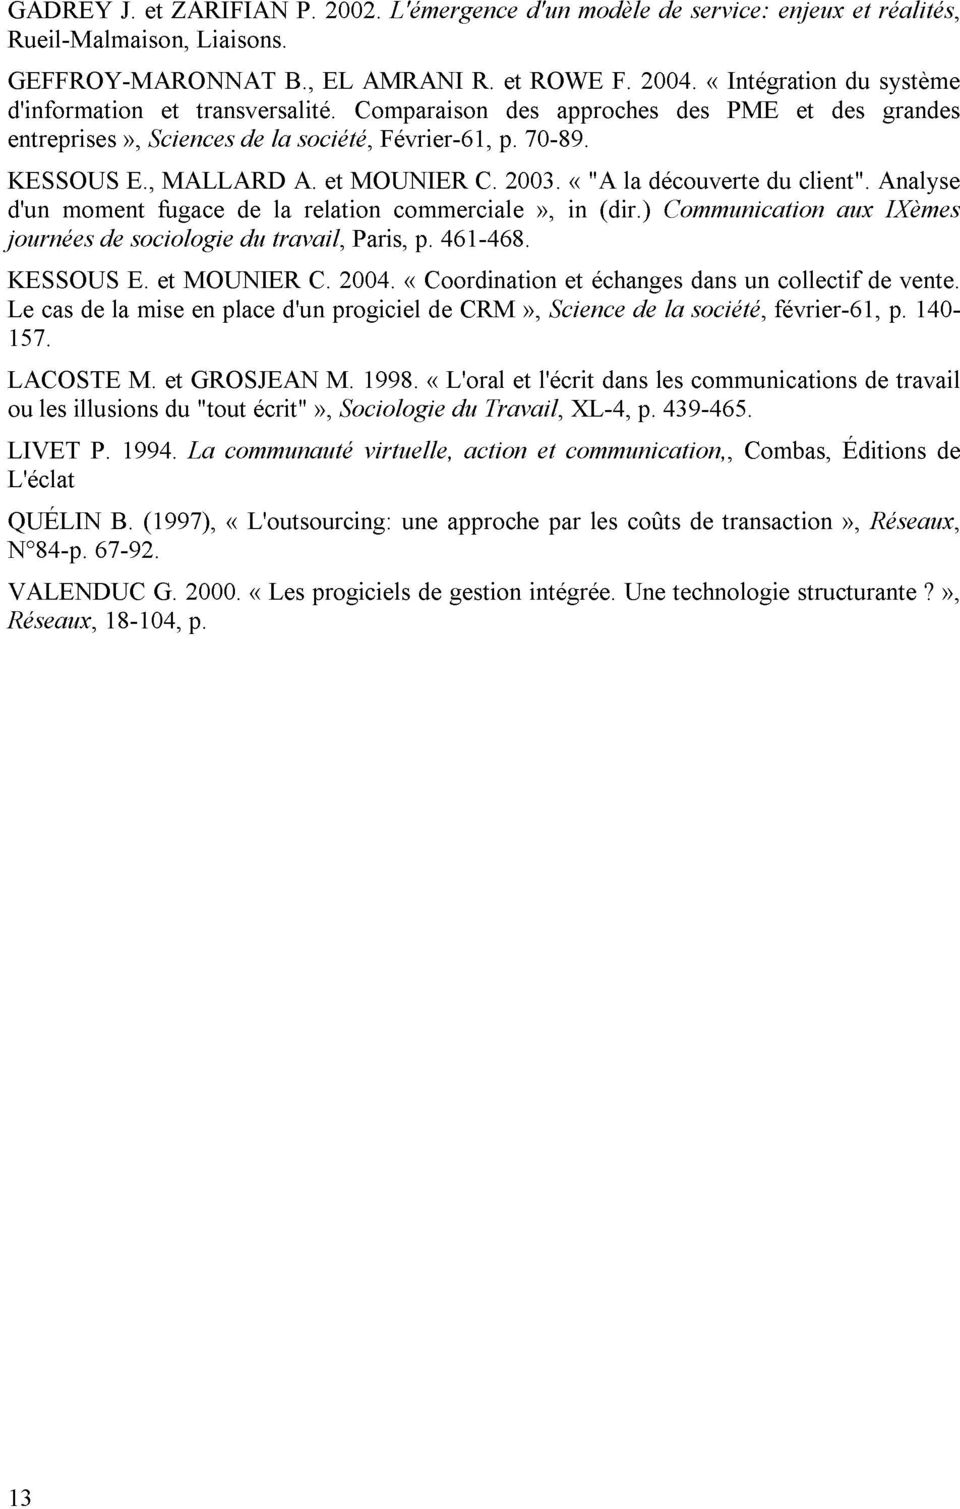 société, relation et MOUNIER Paris, Février-61, commerciale p. 461-468. C. p. 2003. 70-89.», in «"A(dir.) la découverte Communication du client".